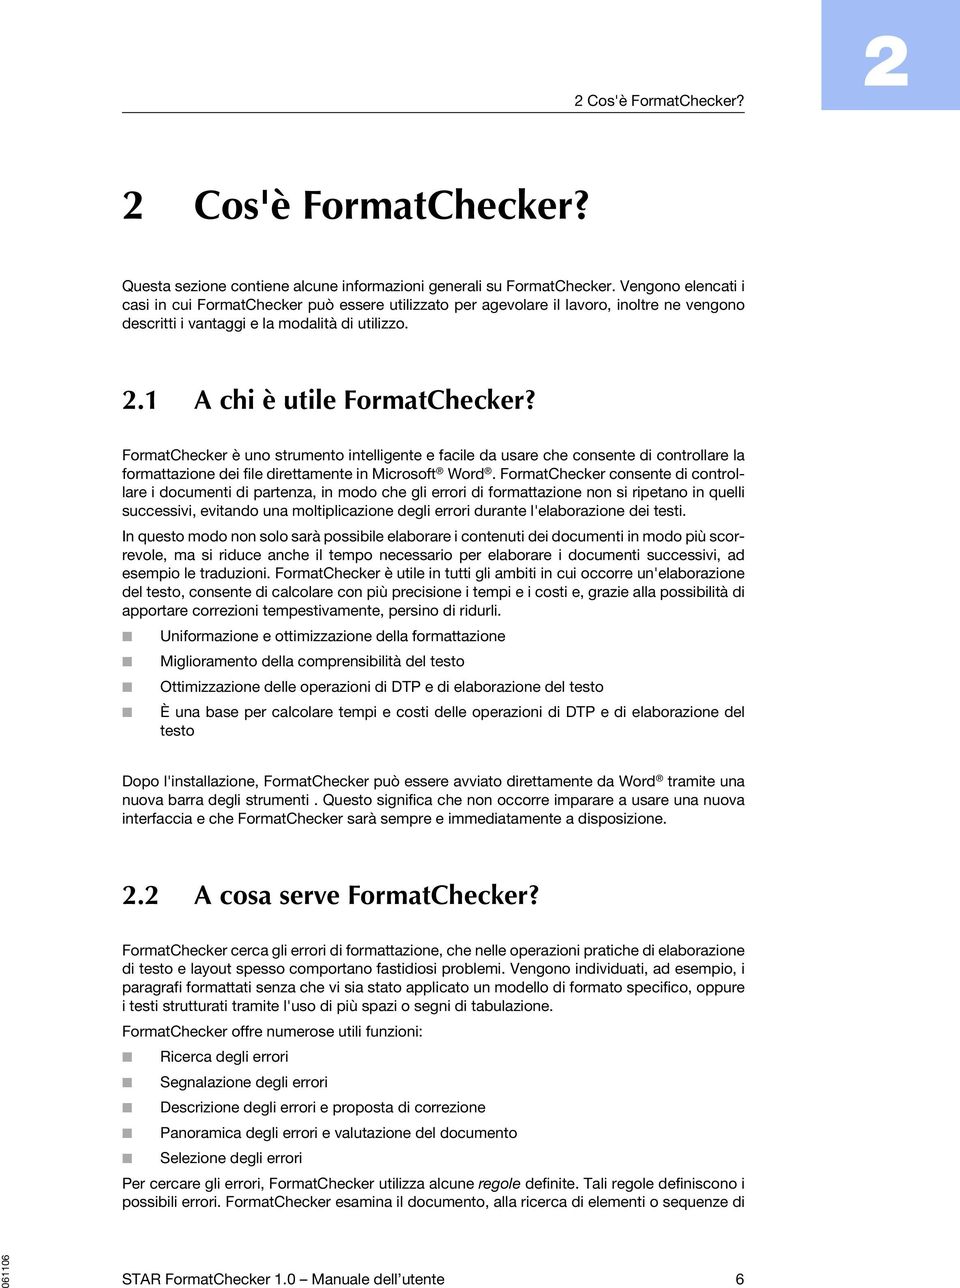 FormatChecker è uno strumento intelligente e facile da usare che consente di controllare la formattazione dei file direttamente in Microsoft Word.